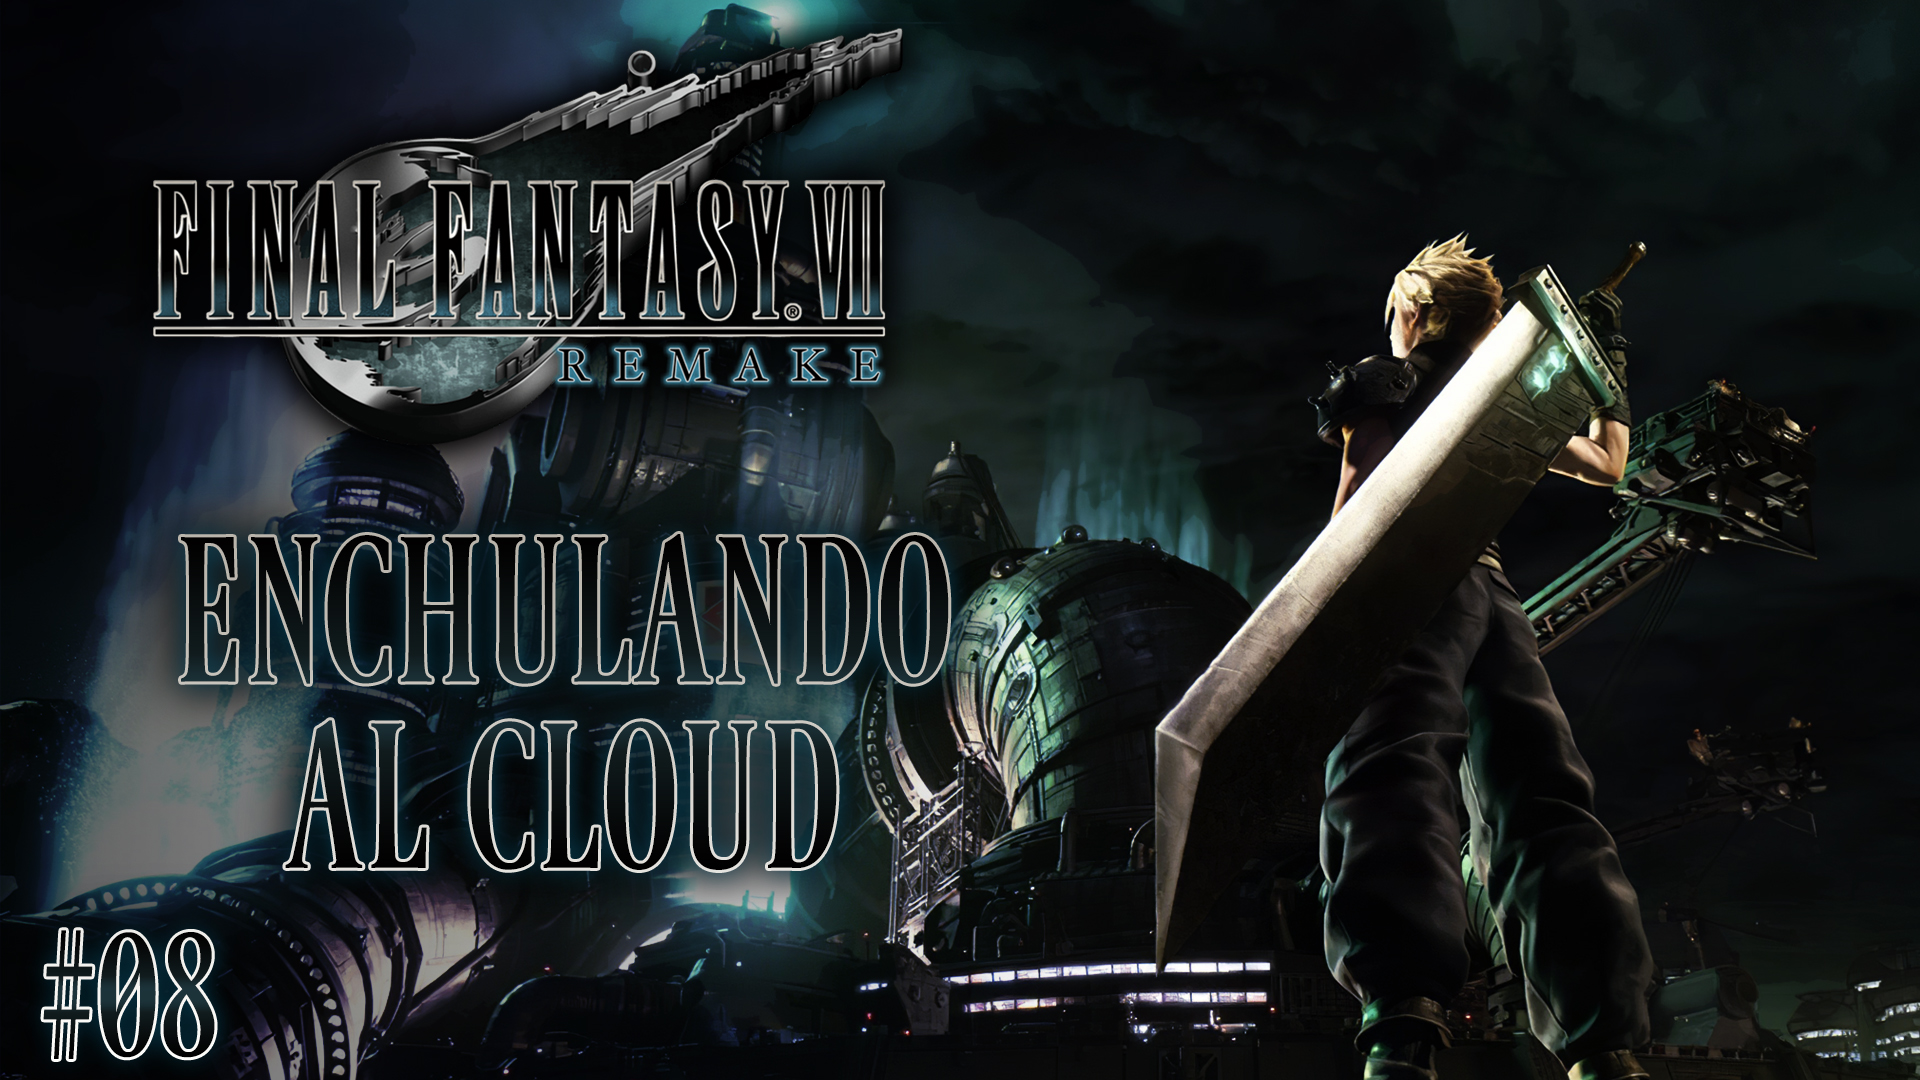 Serie Final Fantasy VII Remake # 08 – Enchulando al Cloud